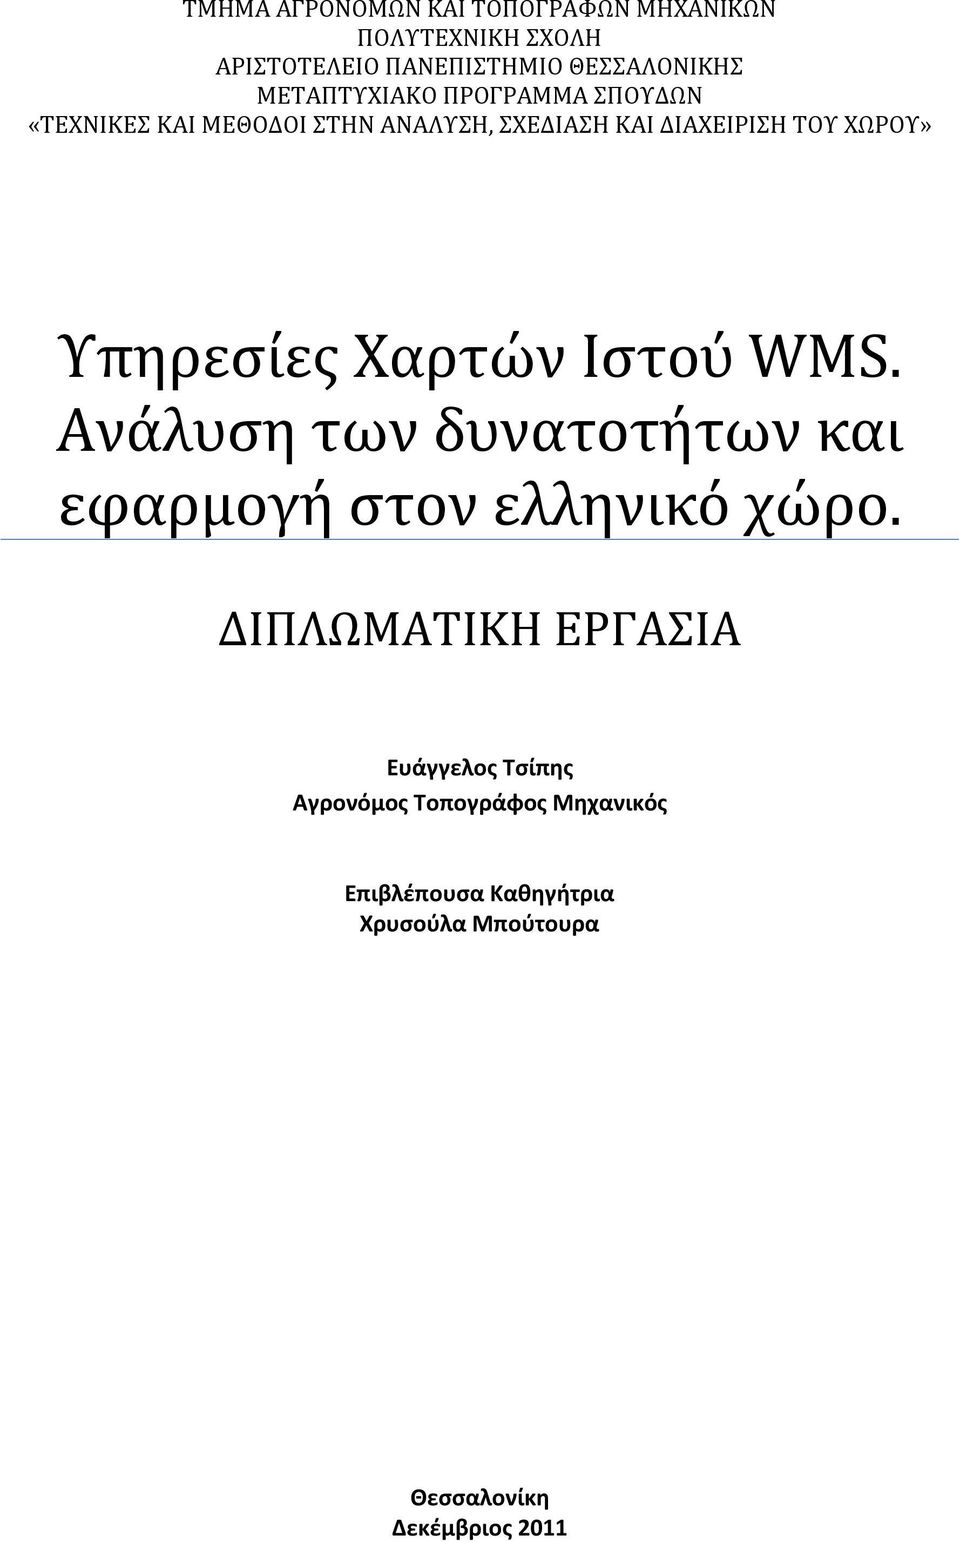 Υπηρεσίες Χαρτών Ιστού WMS. Ανάλυση των δυνατοτήτων και εφαρμογή στον ελληνικό χώρο.